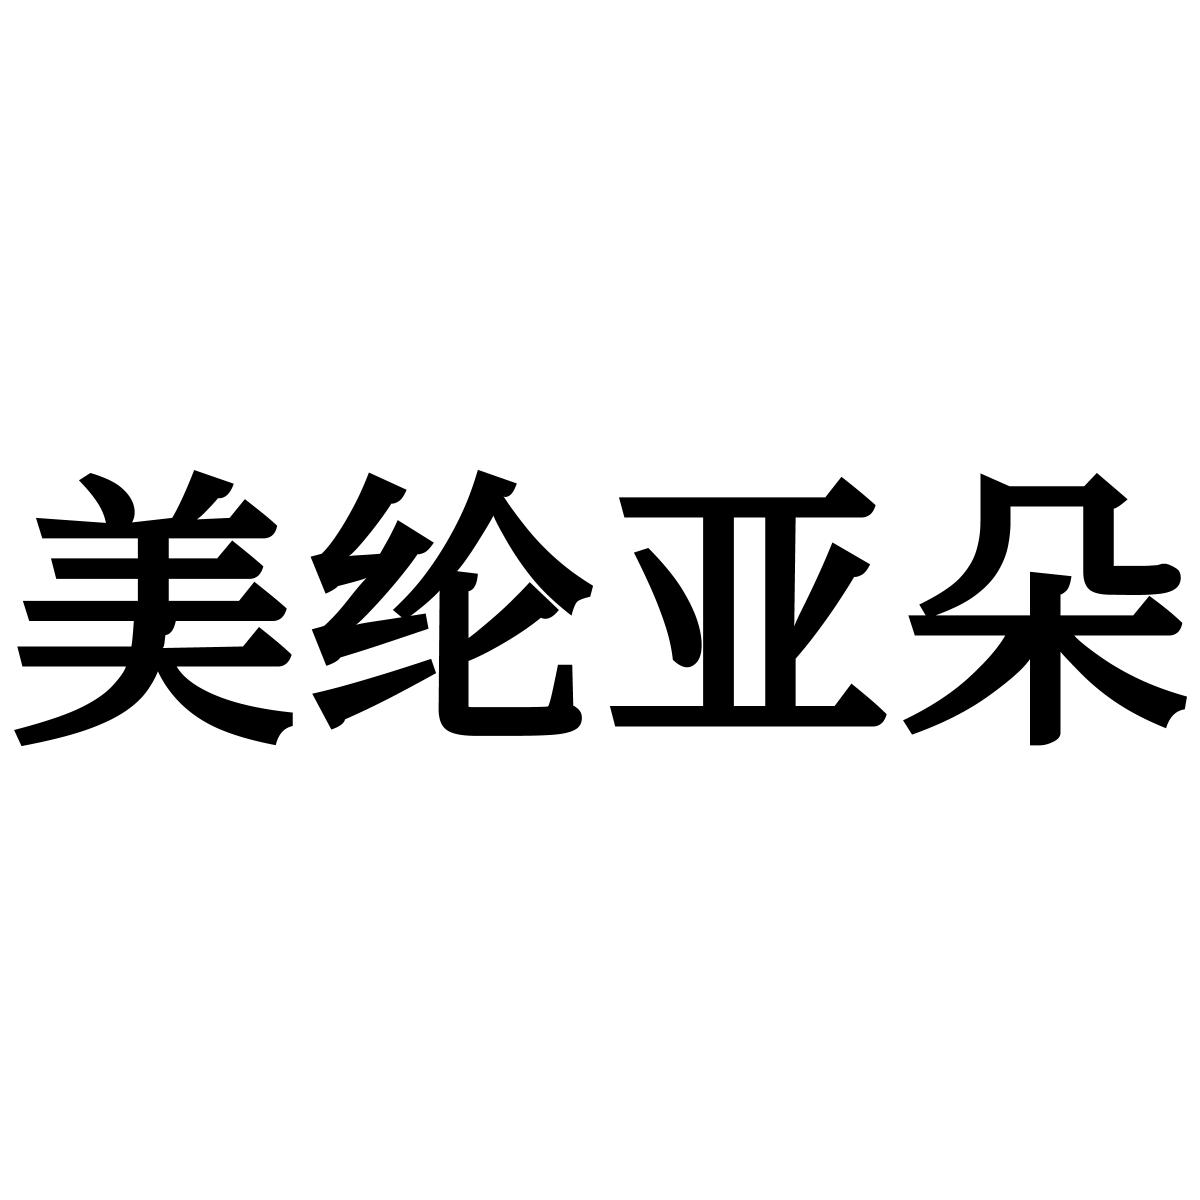 美纶亚朵logo